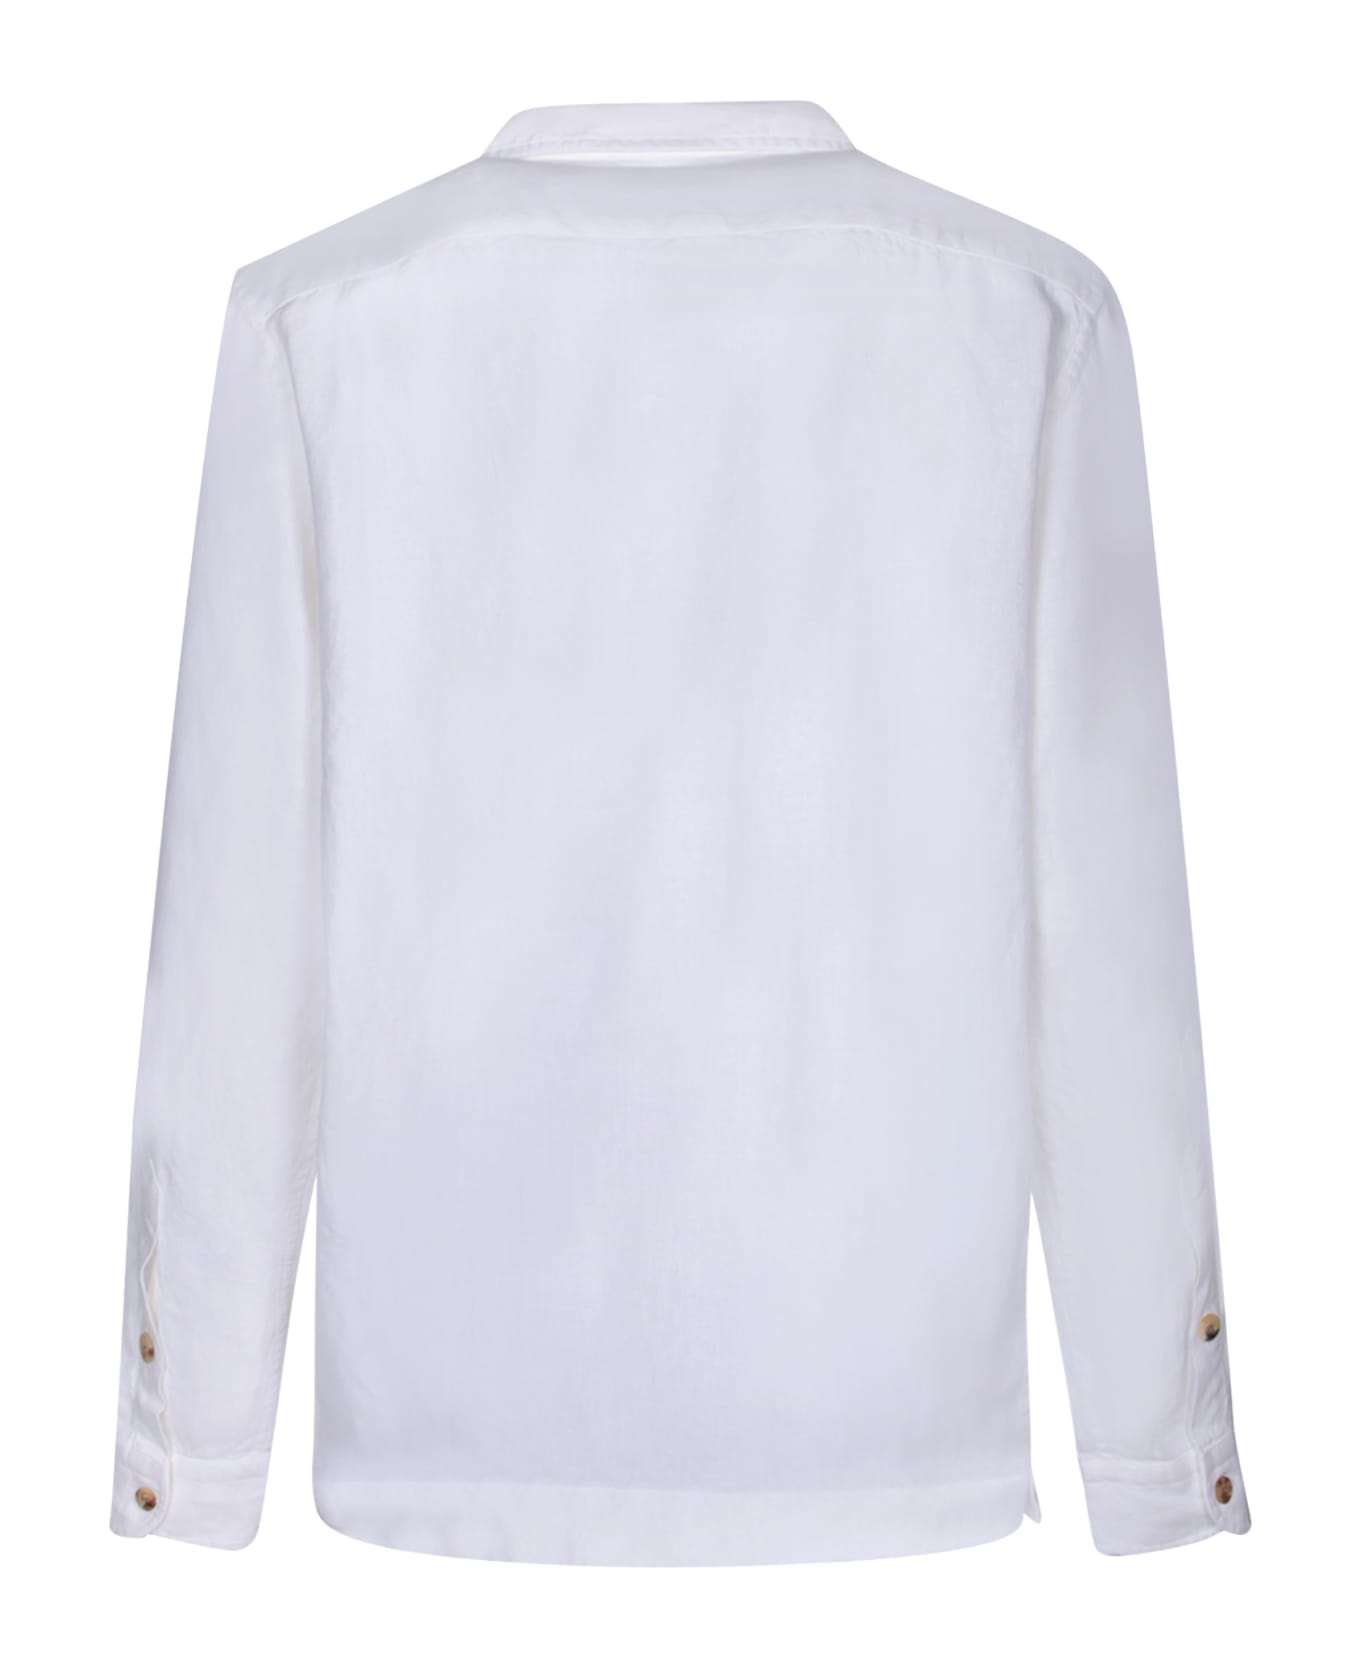 Boglioli White Pockets Overshirt - White